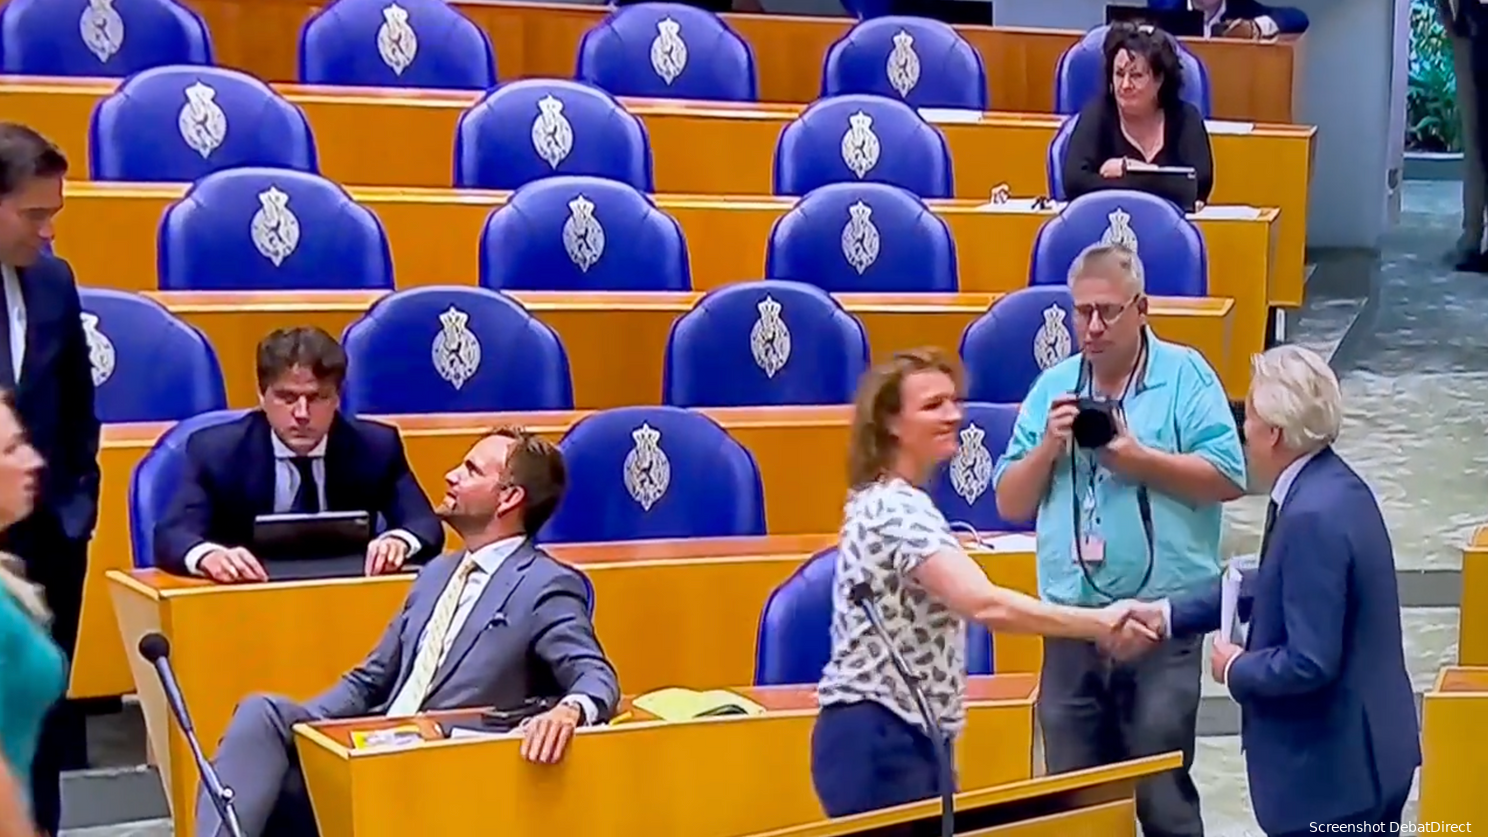 "Kleutergedrag!" "Pure minachting!" Rutte (VVD), Paternotte (D66), Hermans (VVD), Kuiken (PvdA) weigeren Ralf Dekker (FVD) hand te schudden na zijn maidenspeech